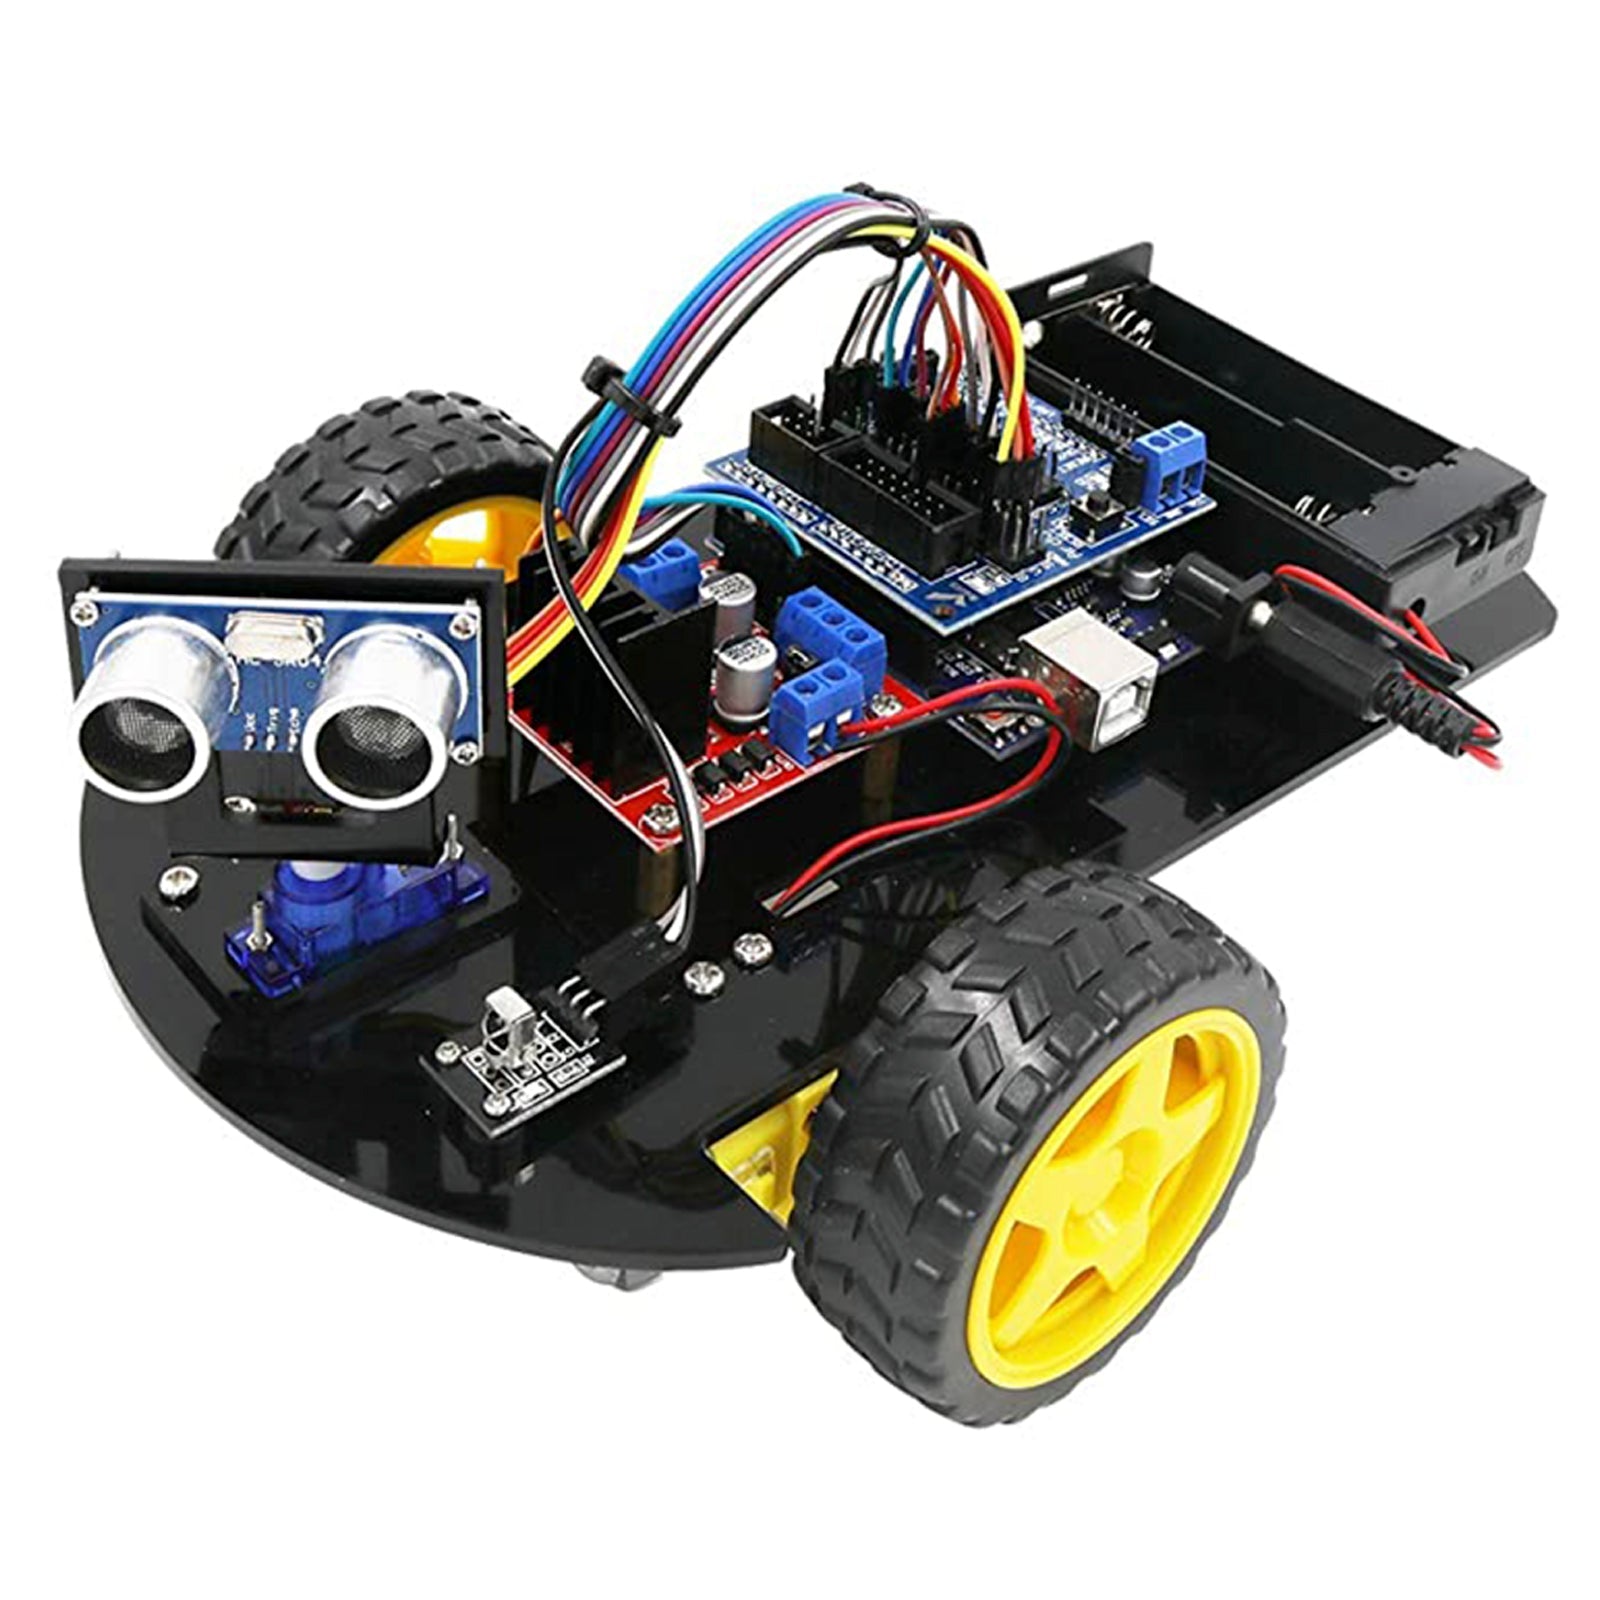 KIT Robot Voiture 2WD esp8266-wifi suiveur detecteur d'obstacles